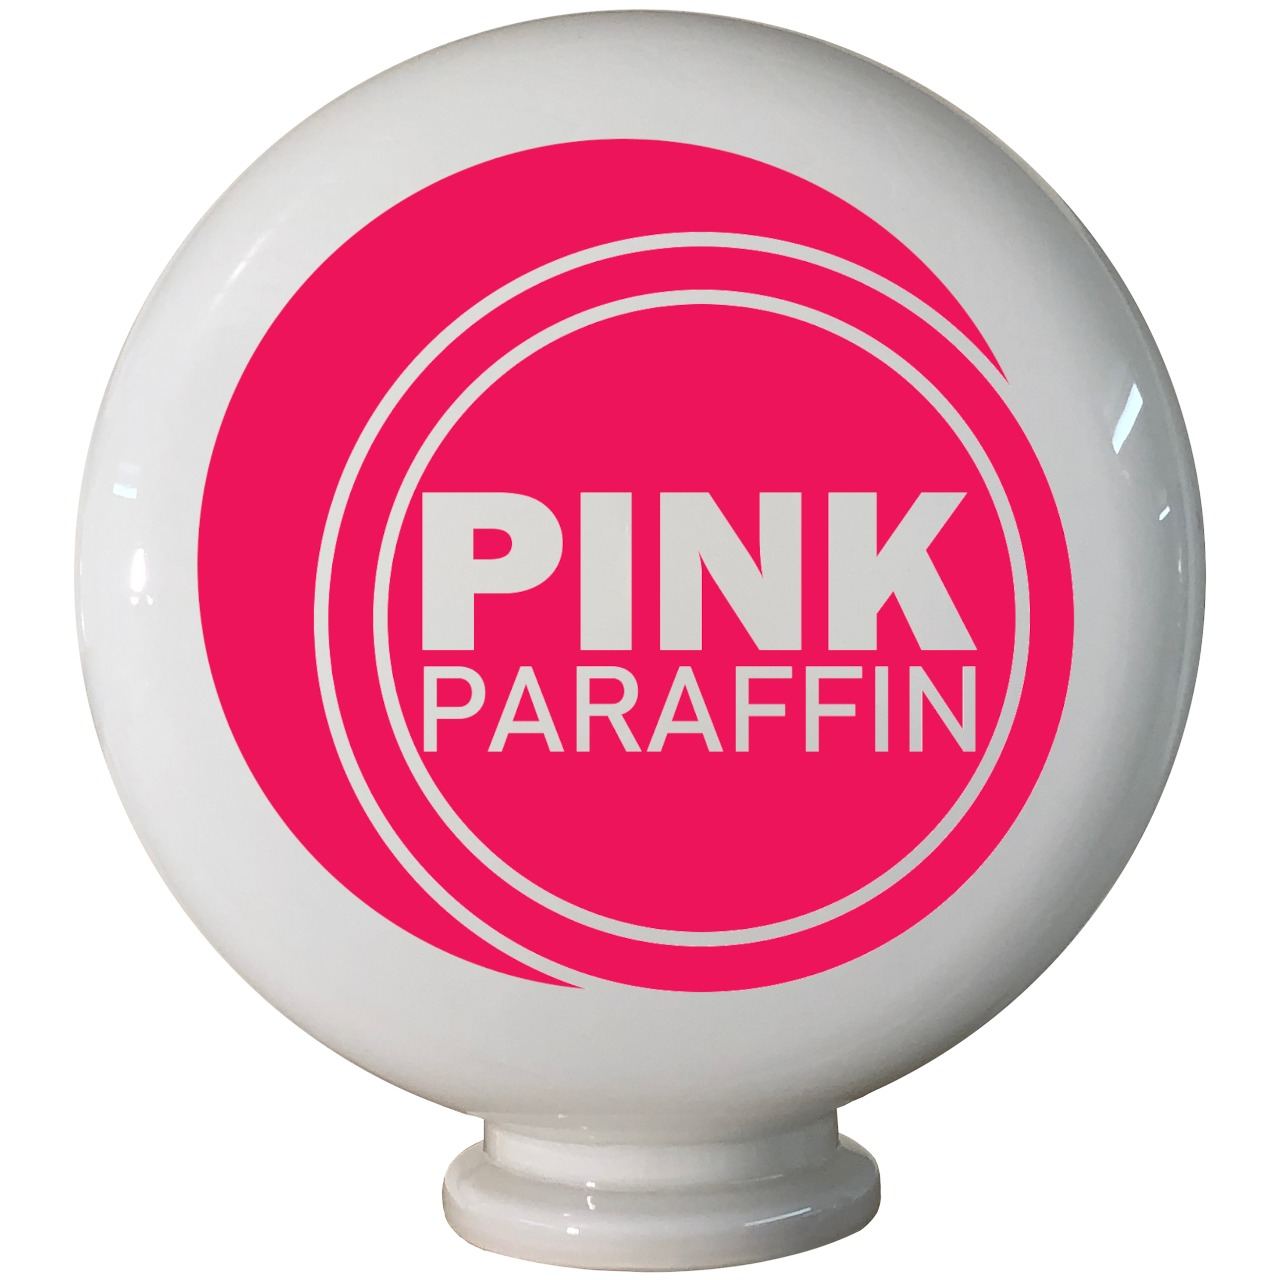 Pink Paraffin